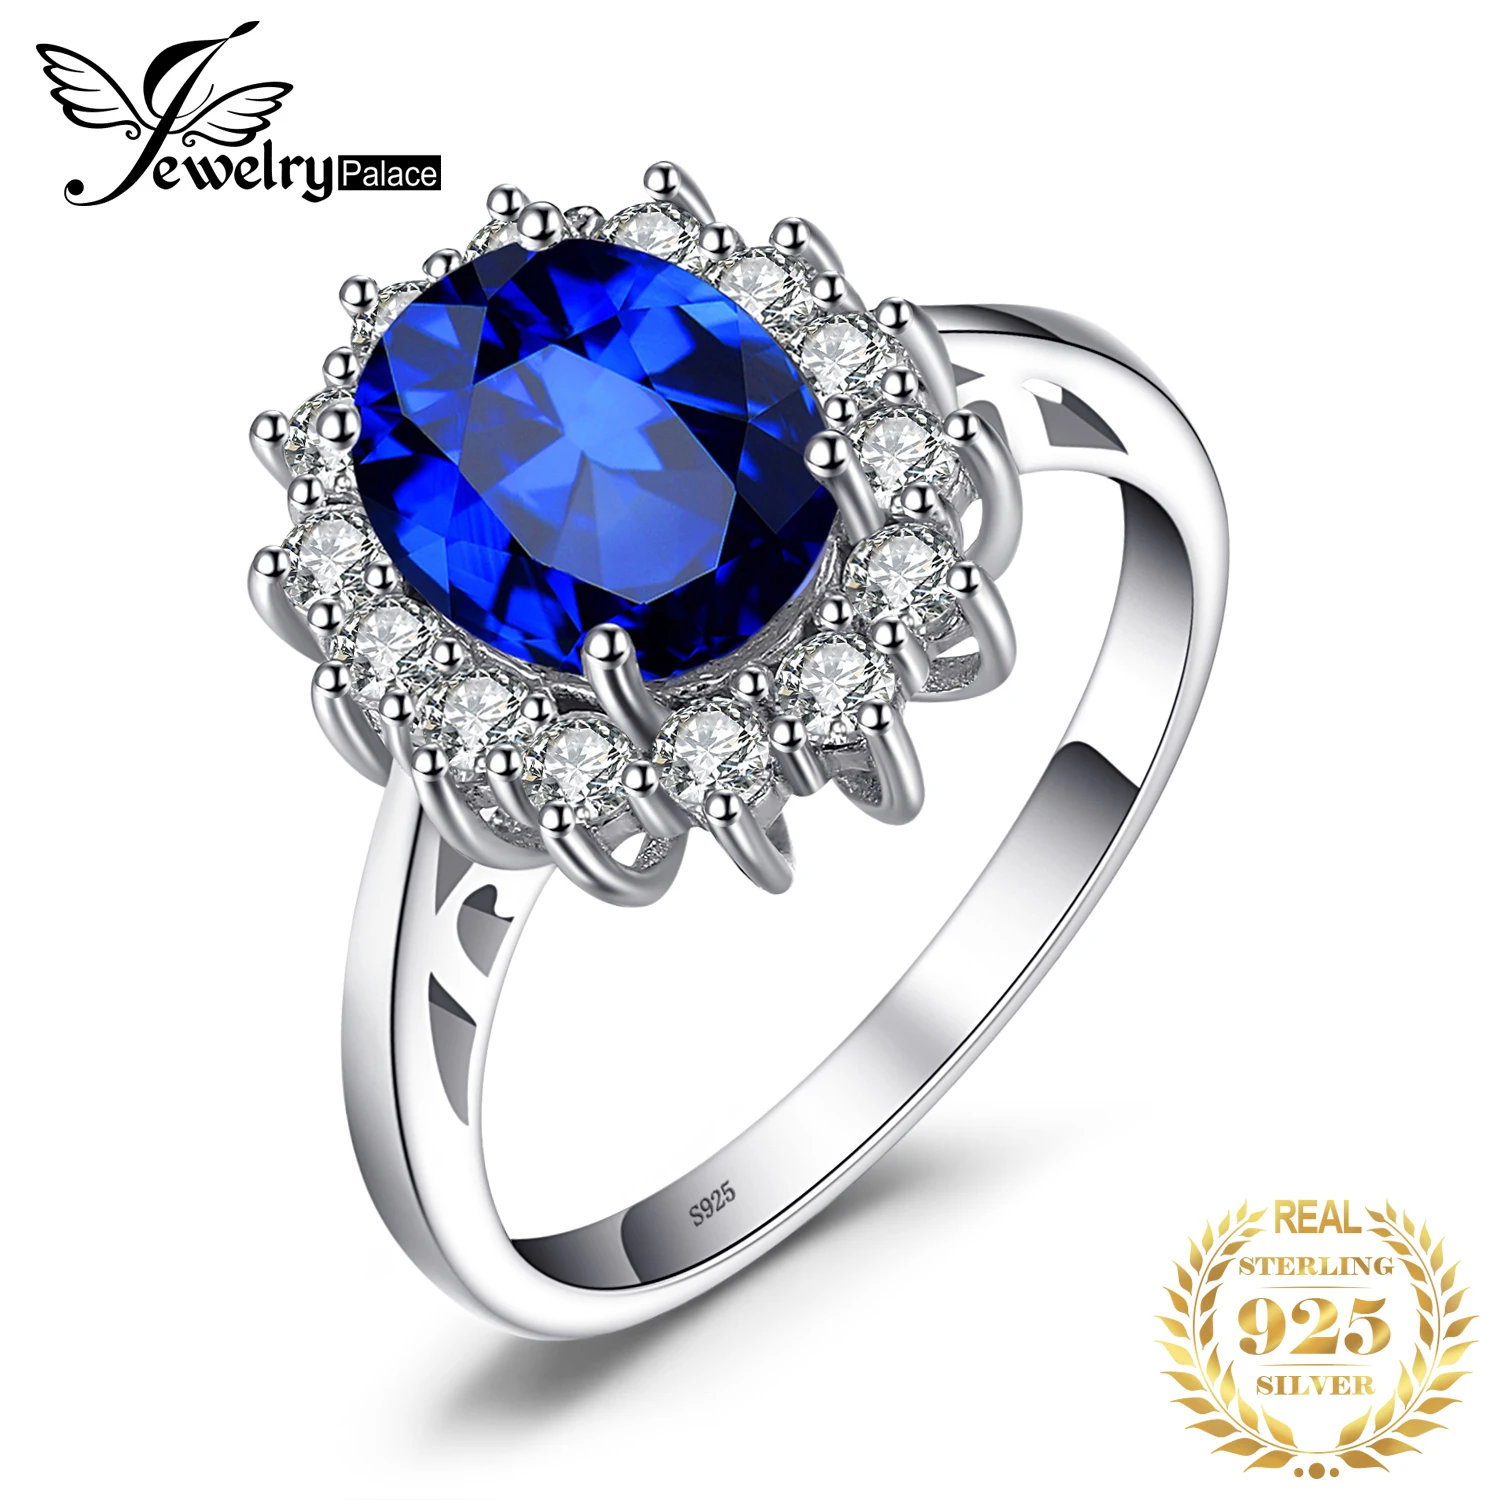 Jewelrypalace Принцесса Диана Уильям Кейт Миддлтон 3.2ct создан синий сапфир Обручение 925 Серебряное кольцо для Для женщин